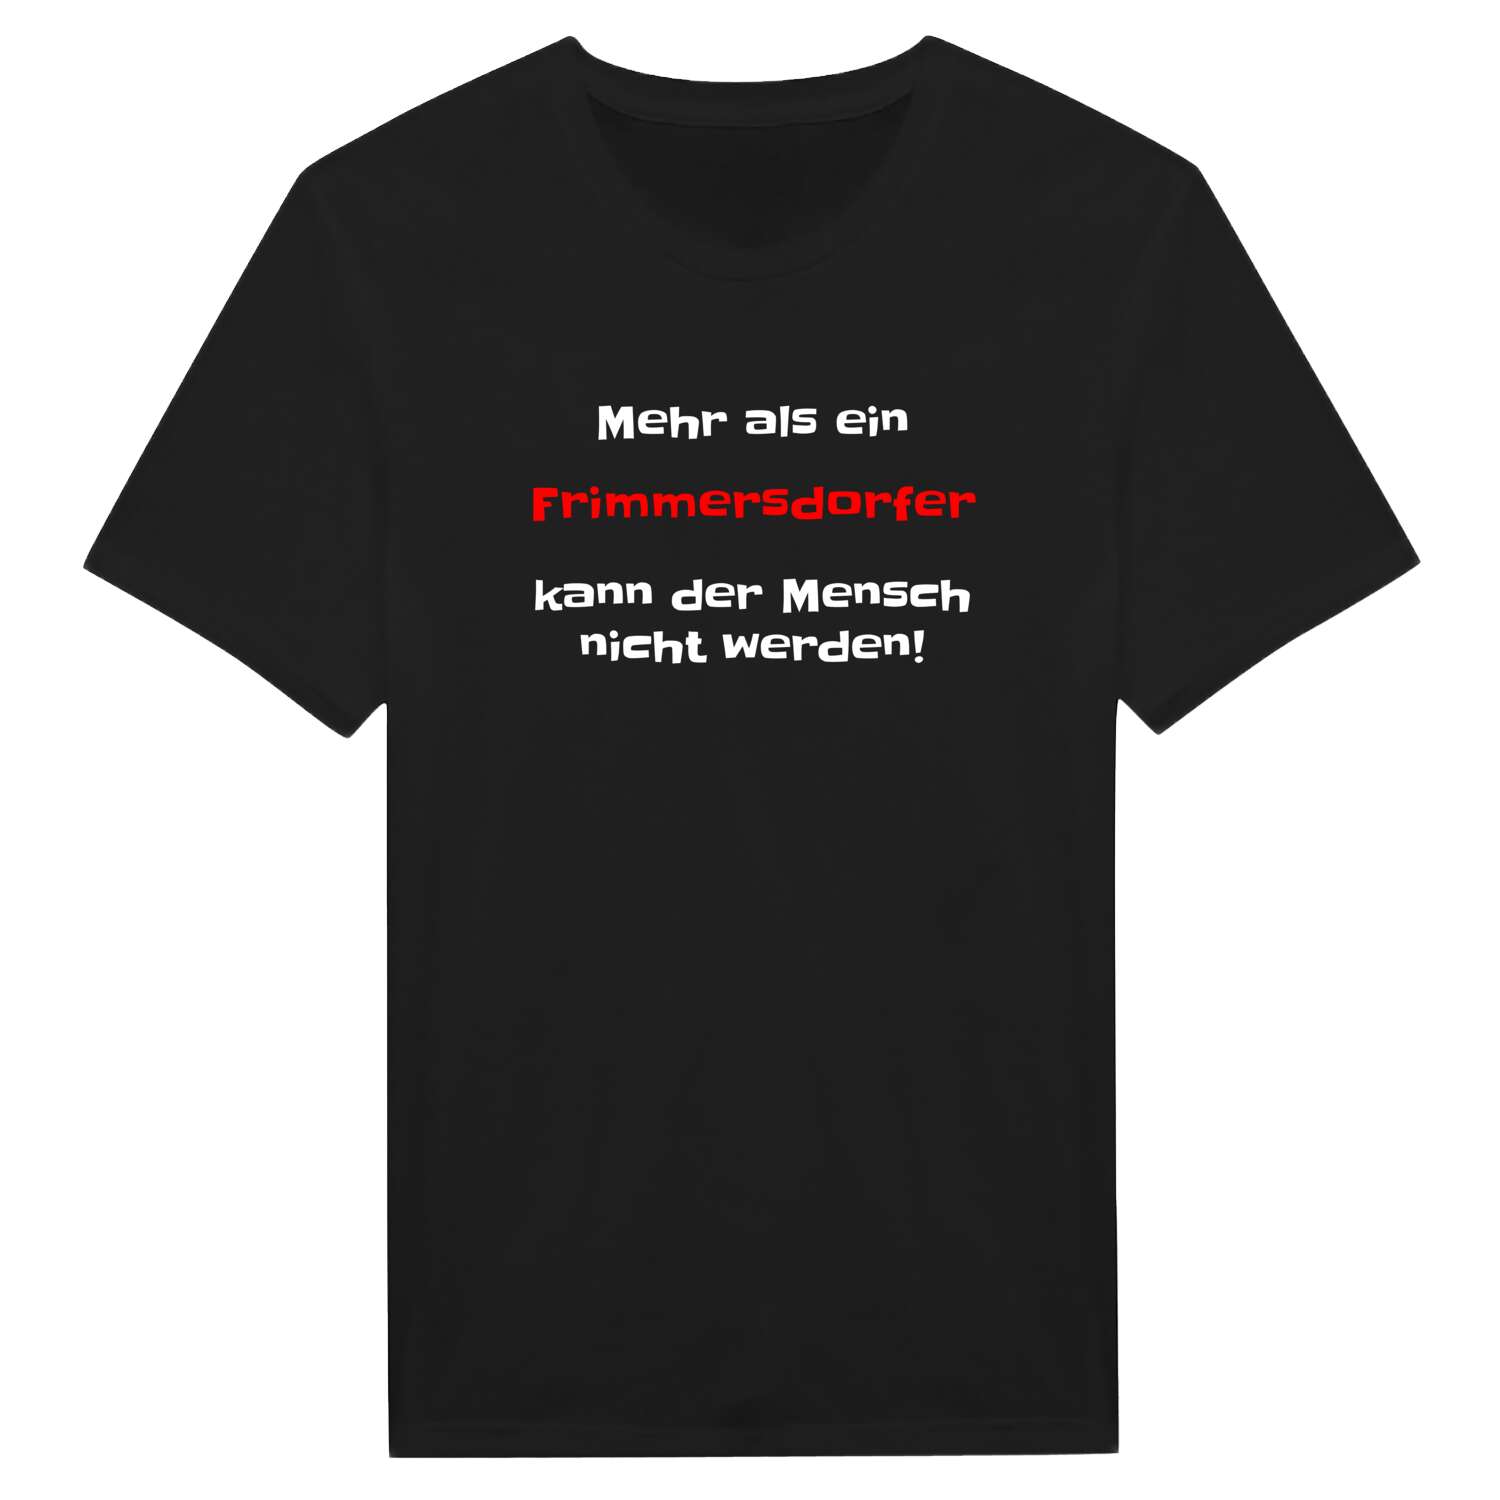 Frimmersdorf T-Shirt »Mehr als ein«